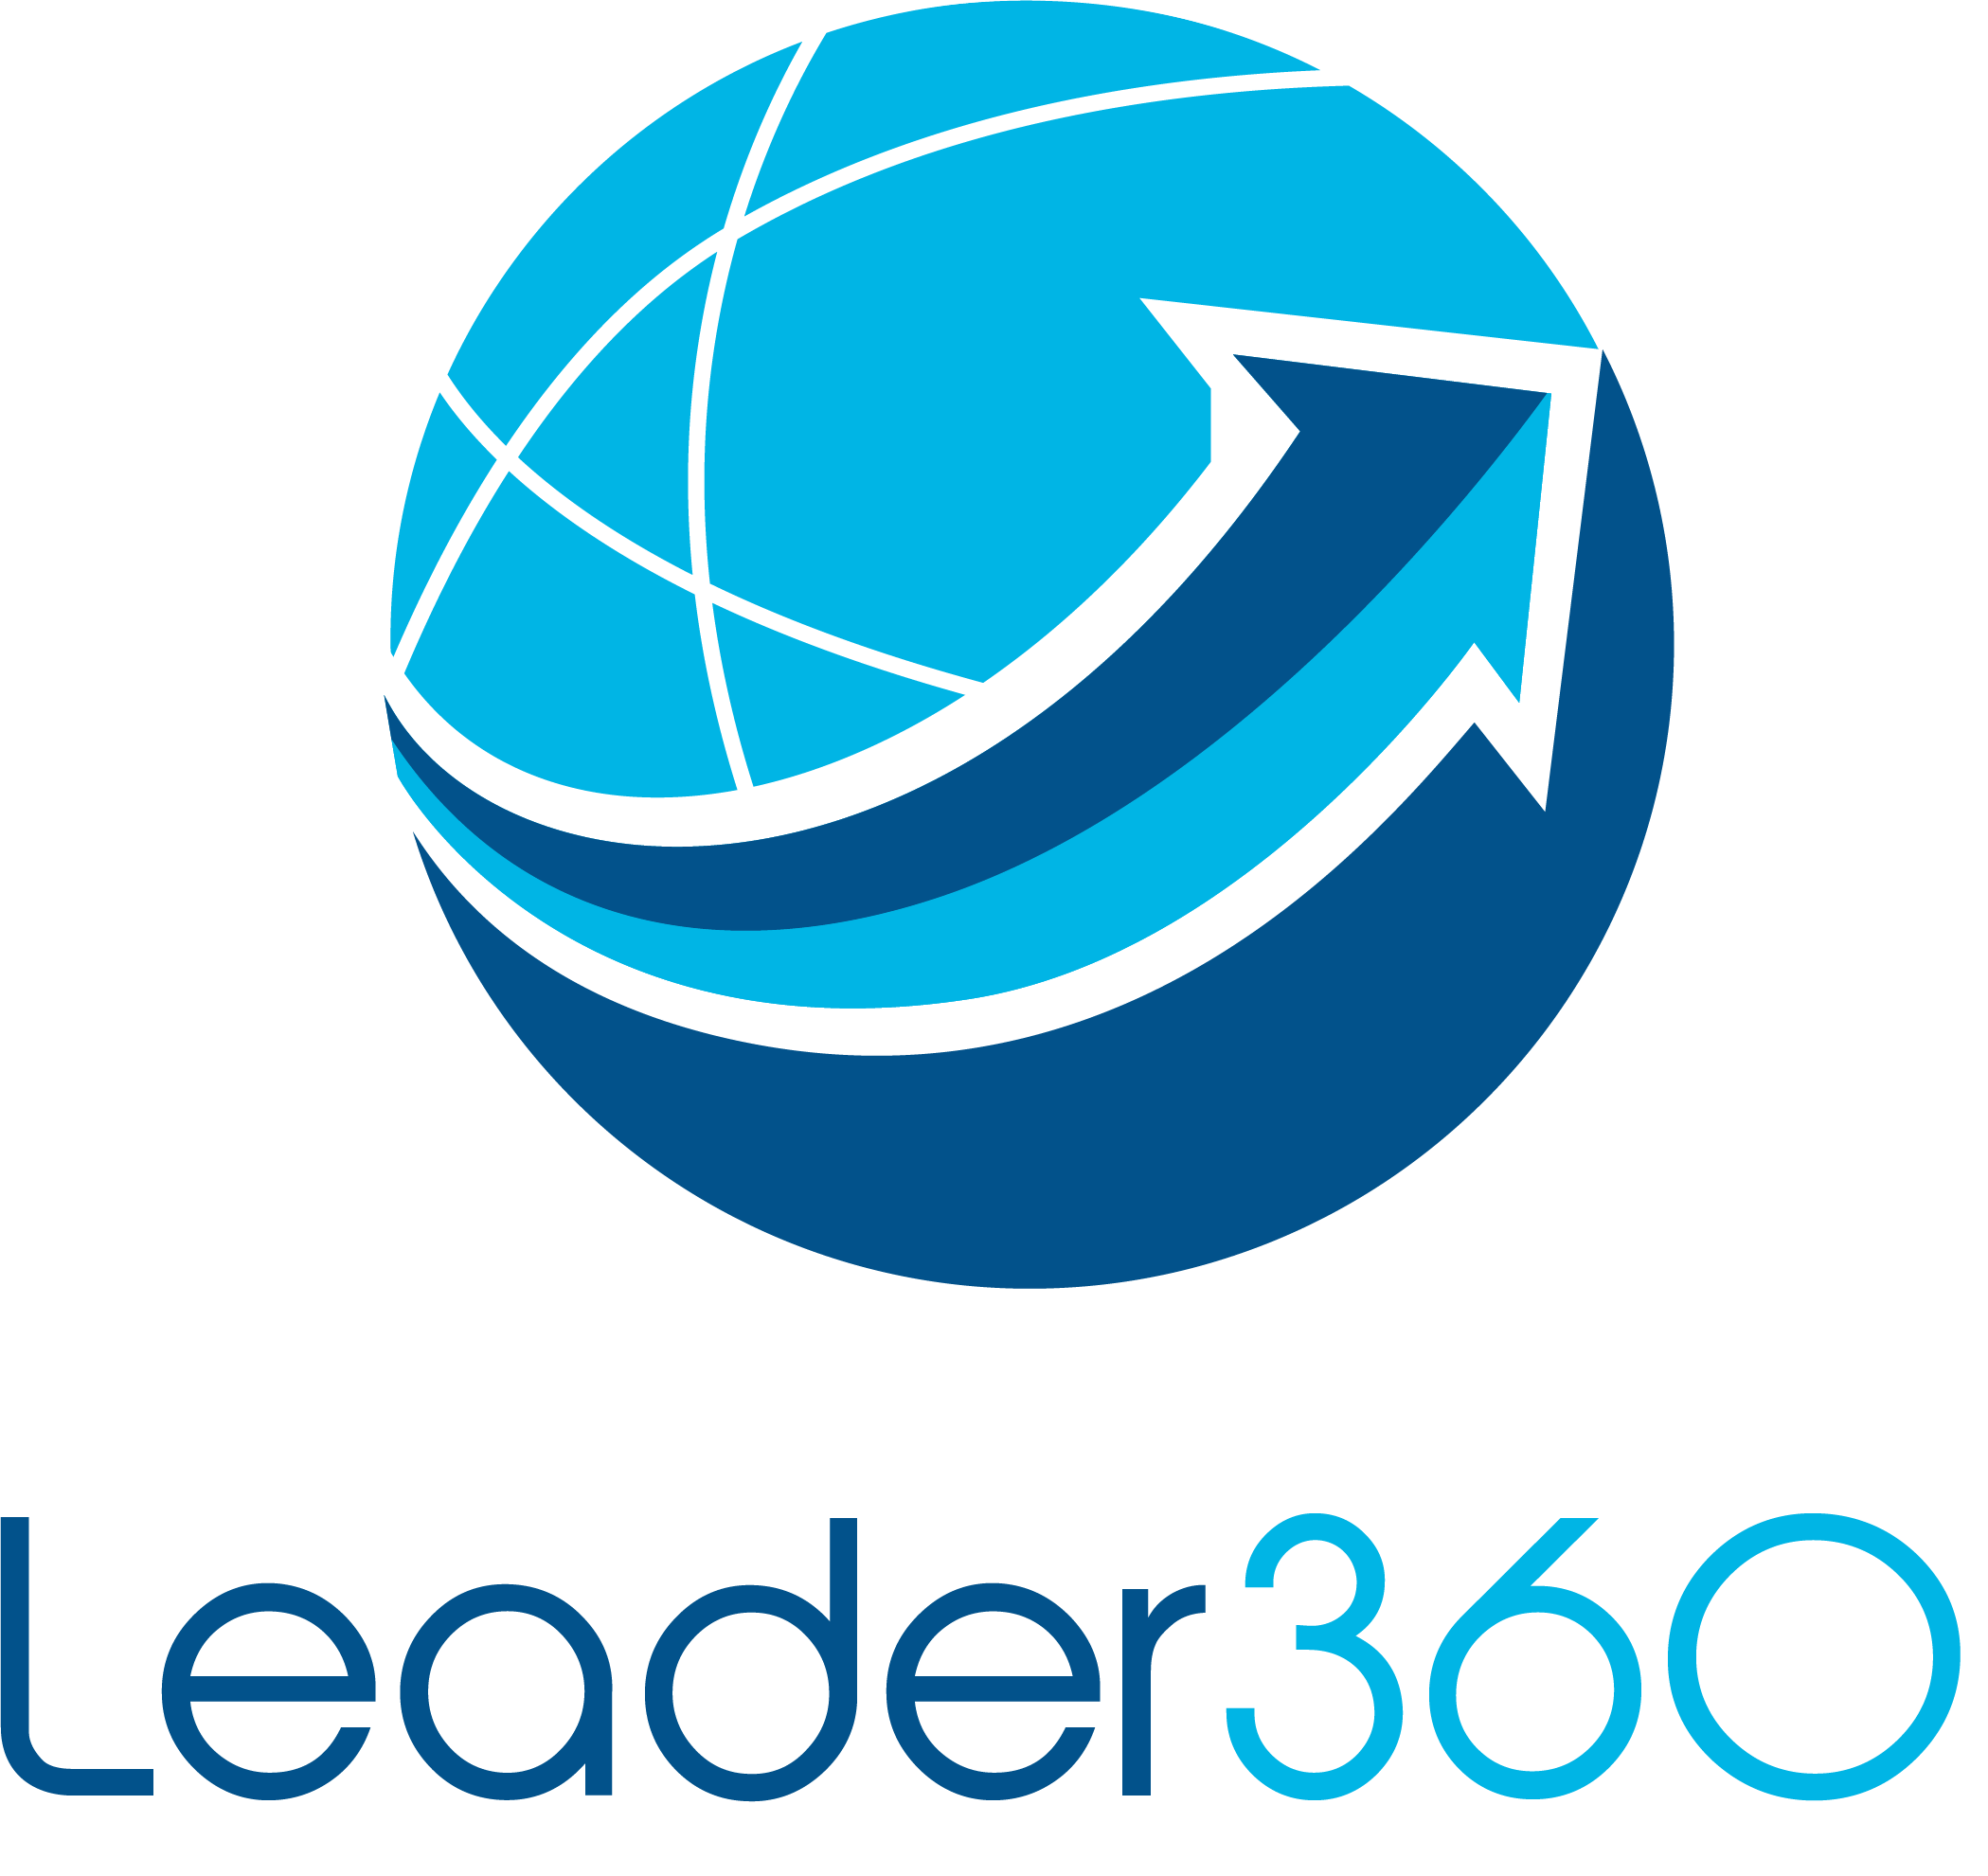 leader360.com